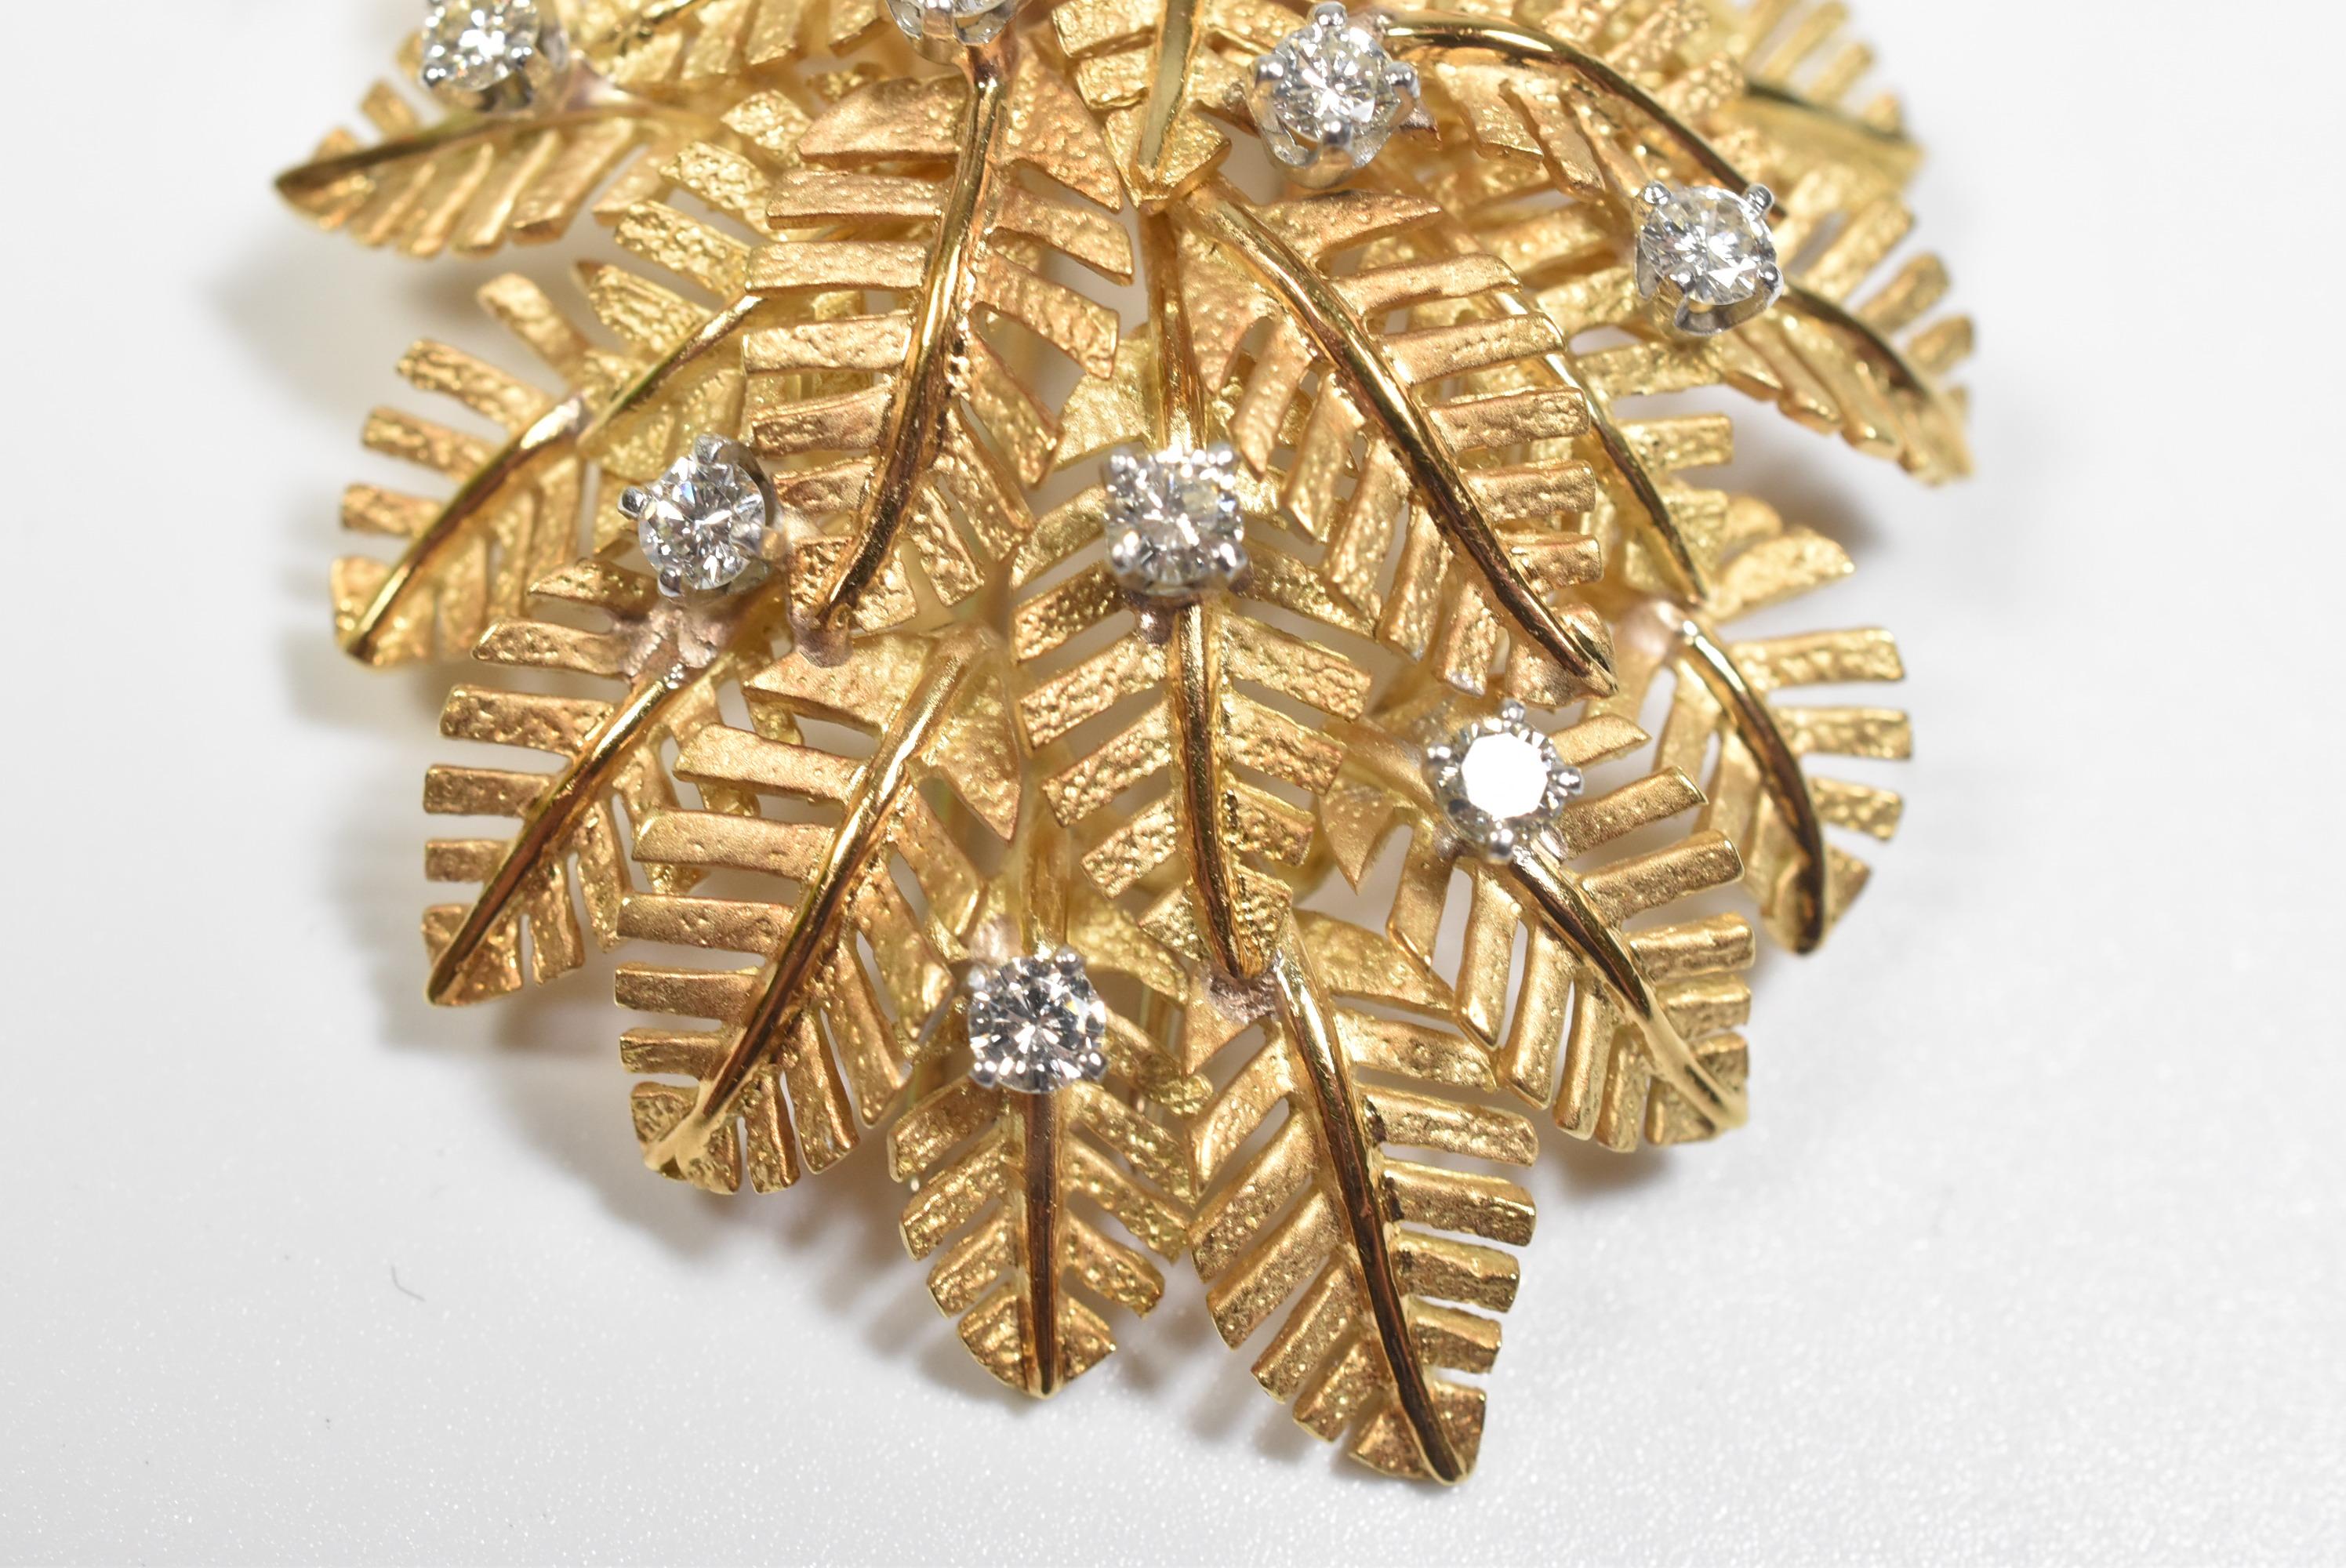 Palmblatt-Anstecknadel oder -Brosche aus 18 Karat Gold mit Diamanten. Die Nadel ist 2,25